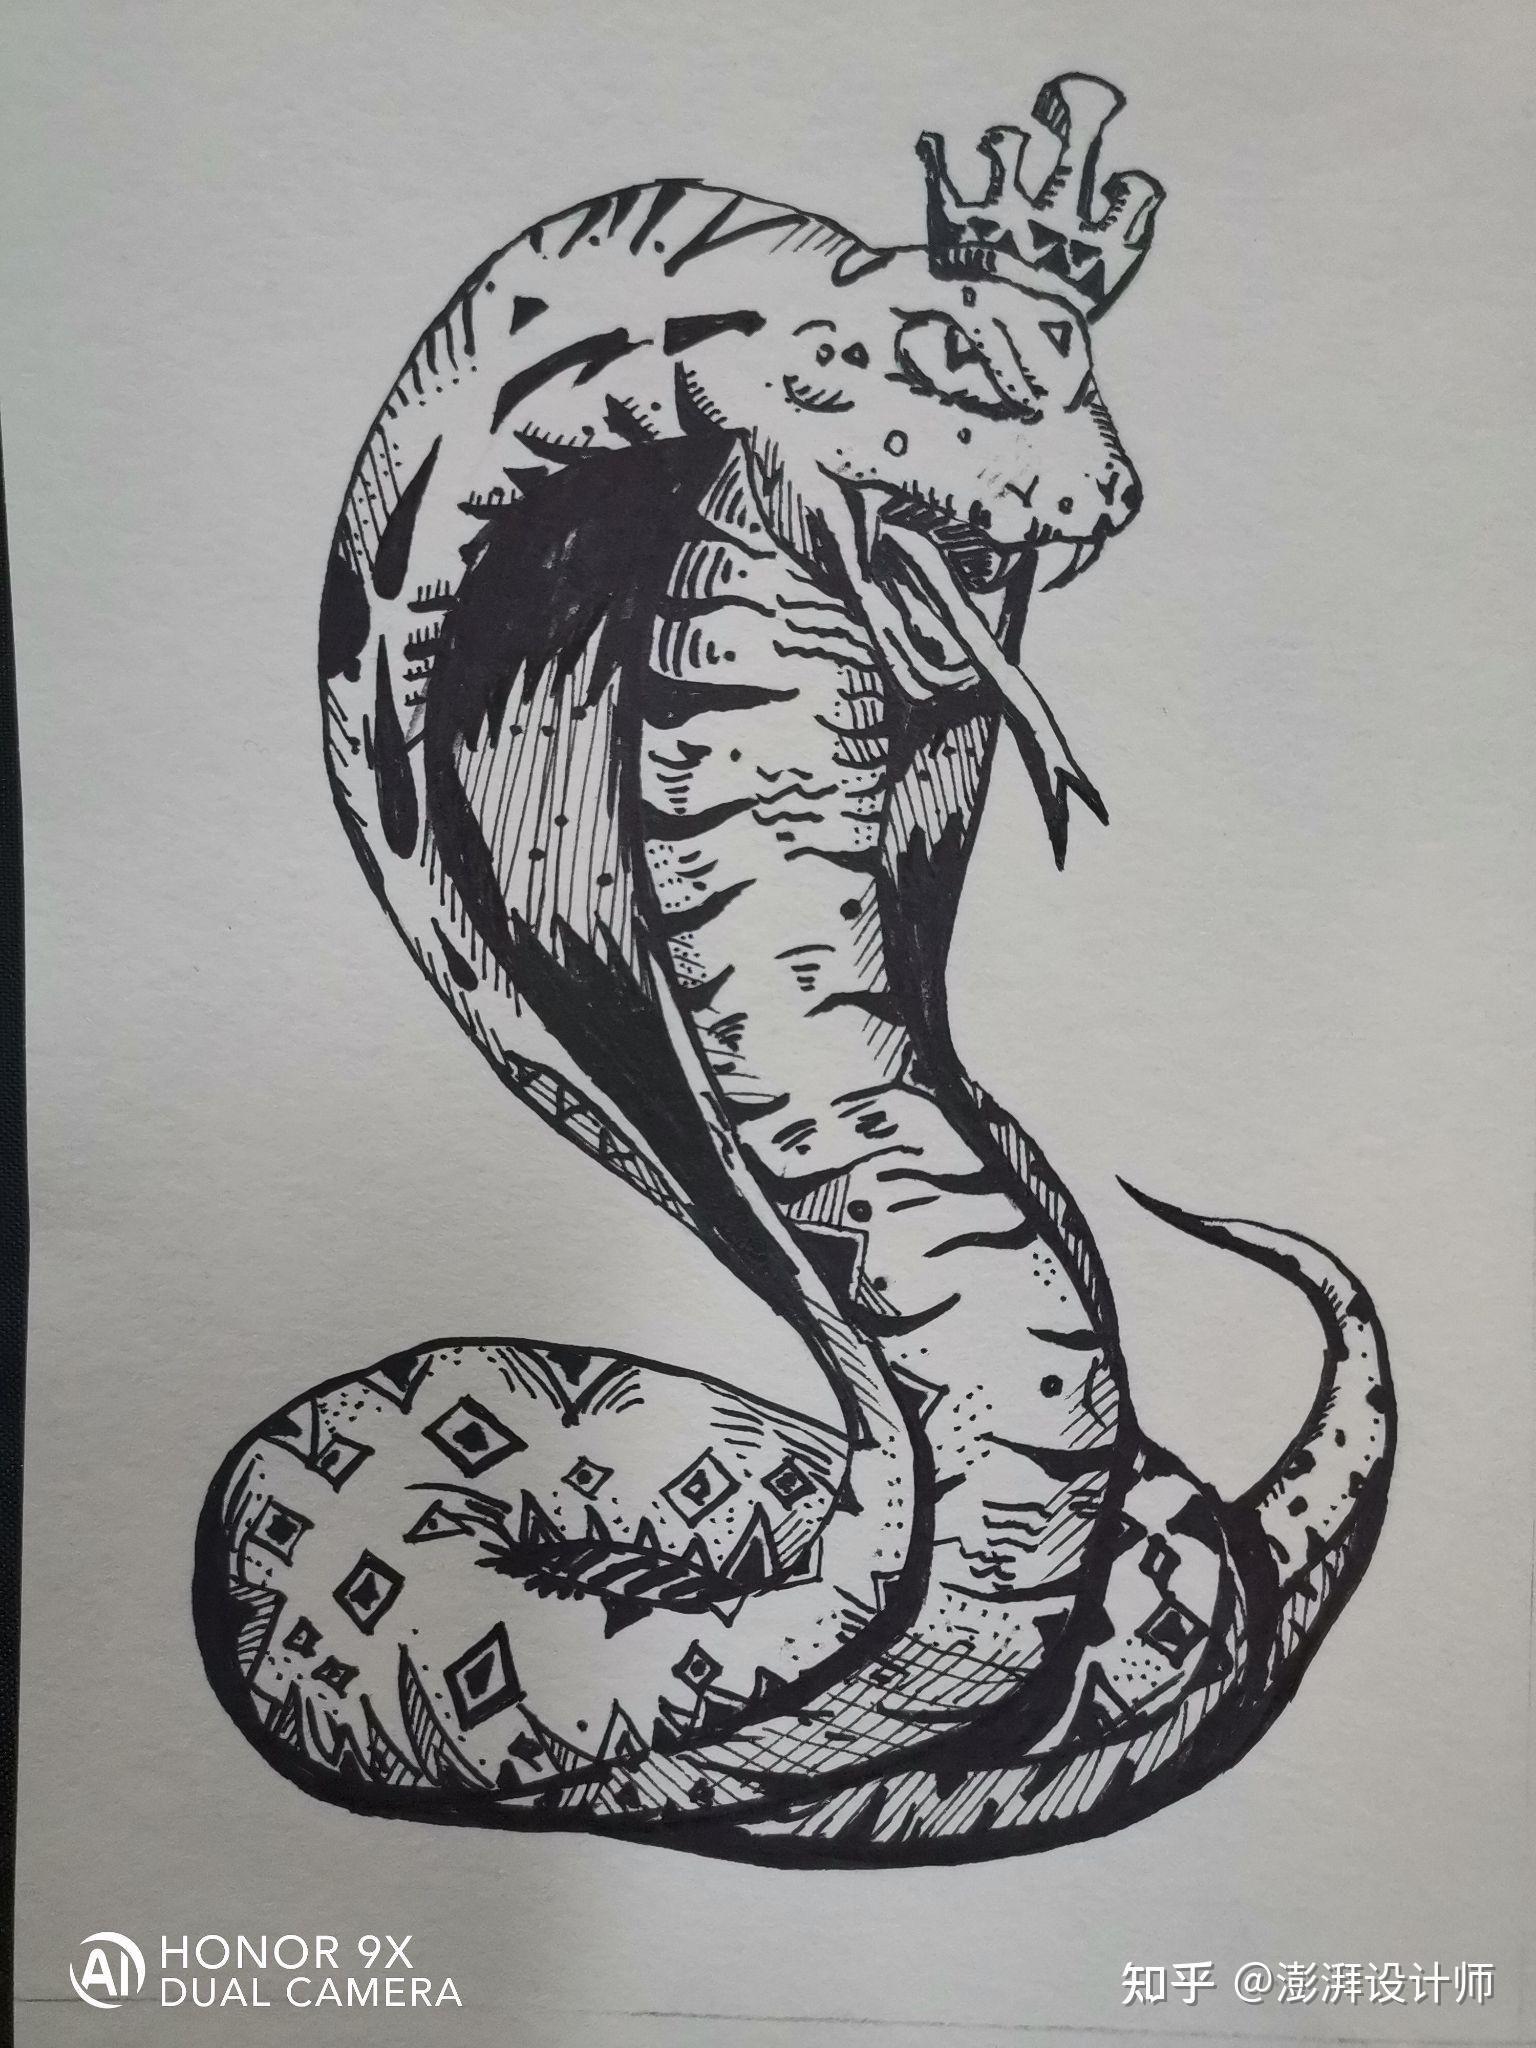 蛇的创意线描画图片